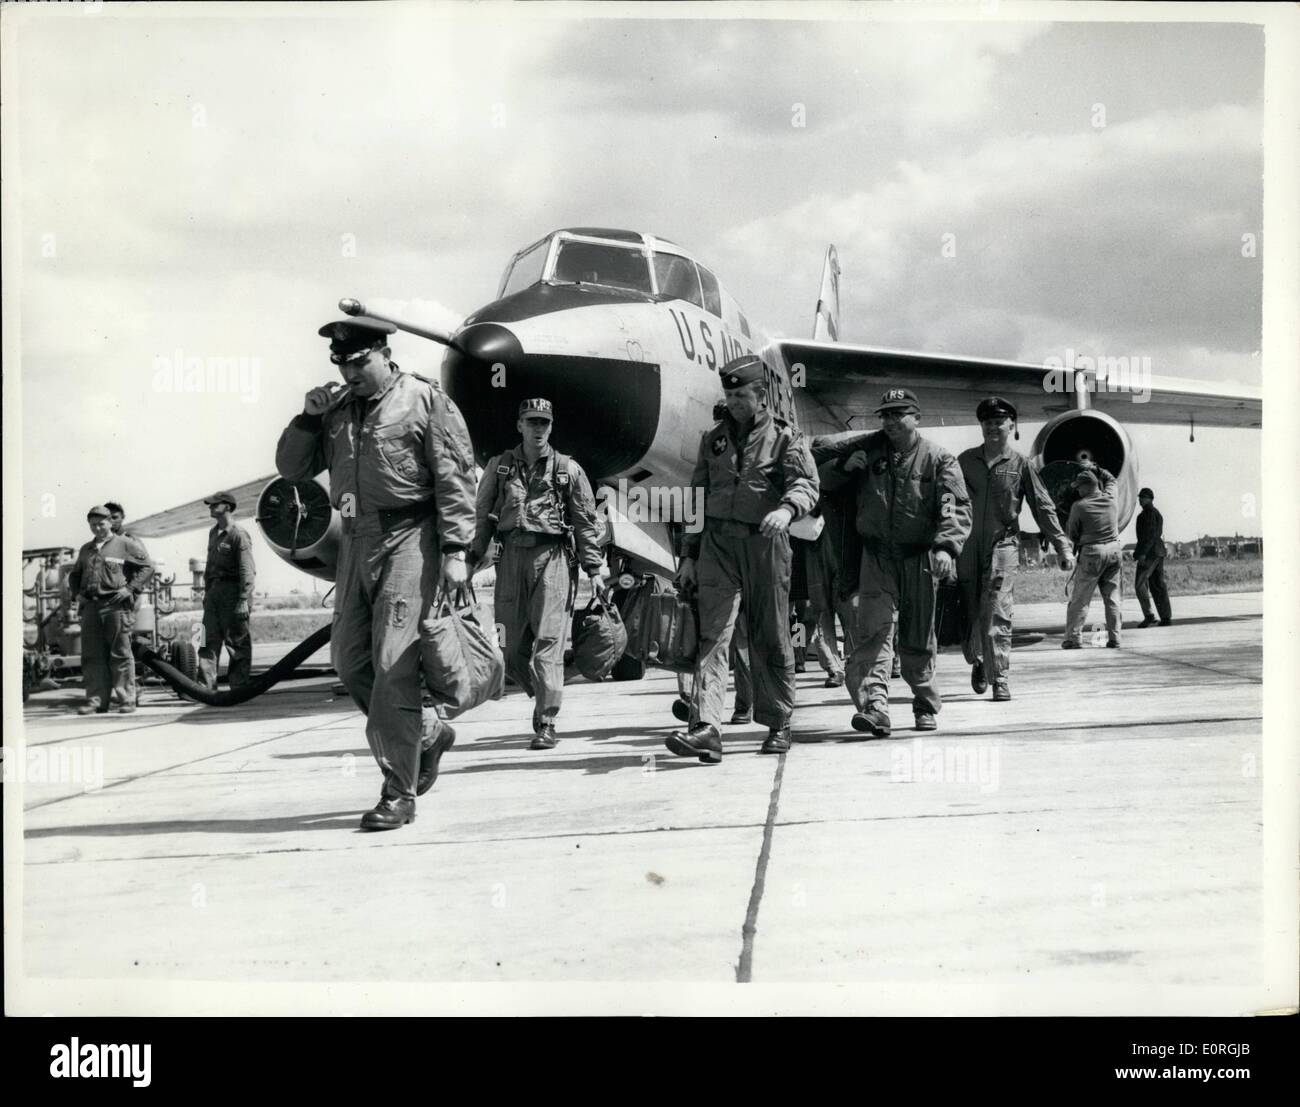 08 août, 1959 - Commutateur commence ''Invasion'' des escadrons américains à l'Angleterre : Premiers coups ont commencé lors de la modification de la United States Air Force escadrons tactiques en Europe après le Général de Gaulle a refusé de laisser les Américains pour stocker des armes nucléaires en France, les escadrons de chasseurs-bombardiers tactiques sont d'être passé d'aérodrome en France à l'Allemagne, tandis que les aéronefs de plus longue portée, sont déplacées Retour à la Grande-Bretagne. Aujourd'hui la 10e Escadre de reconnaissance tactique, de l'US Air Force, a volé dans la RAF Station à Alconbury, Hunttingdonshire, de l'Allemagne Banque D'Images